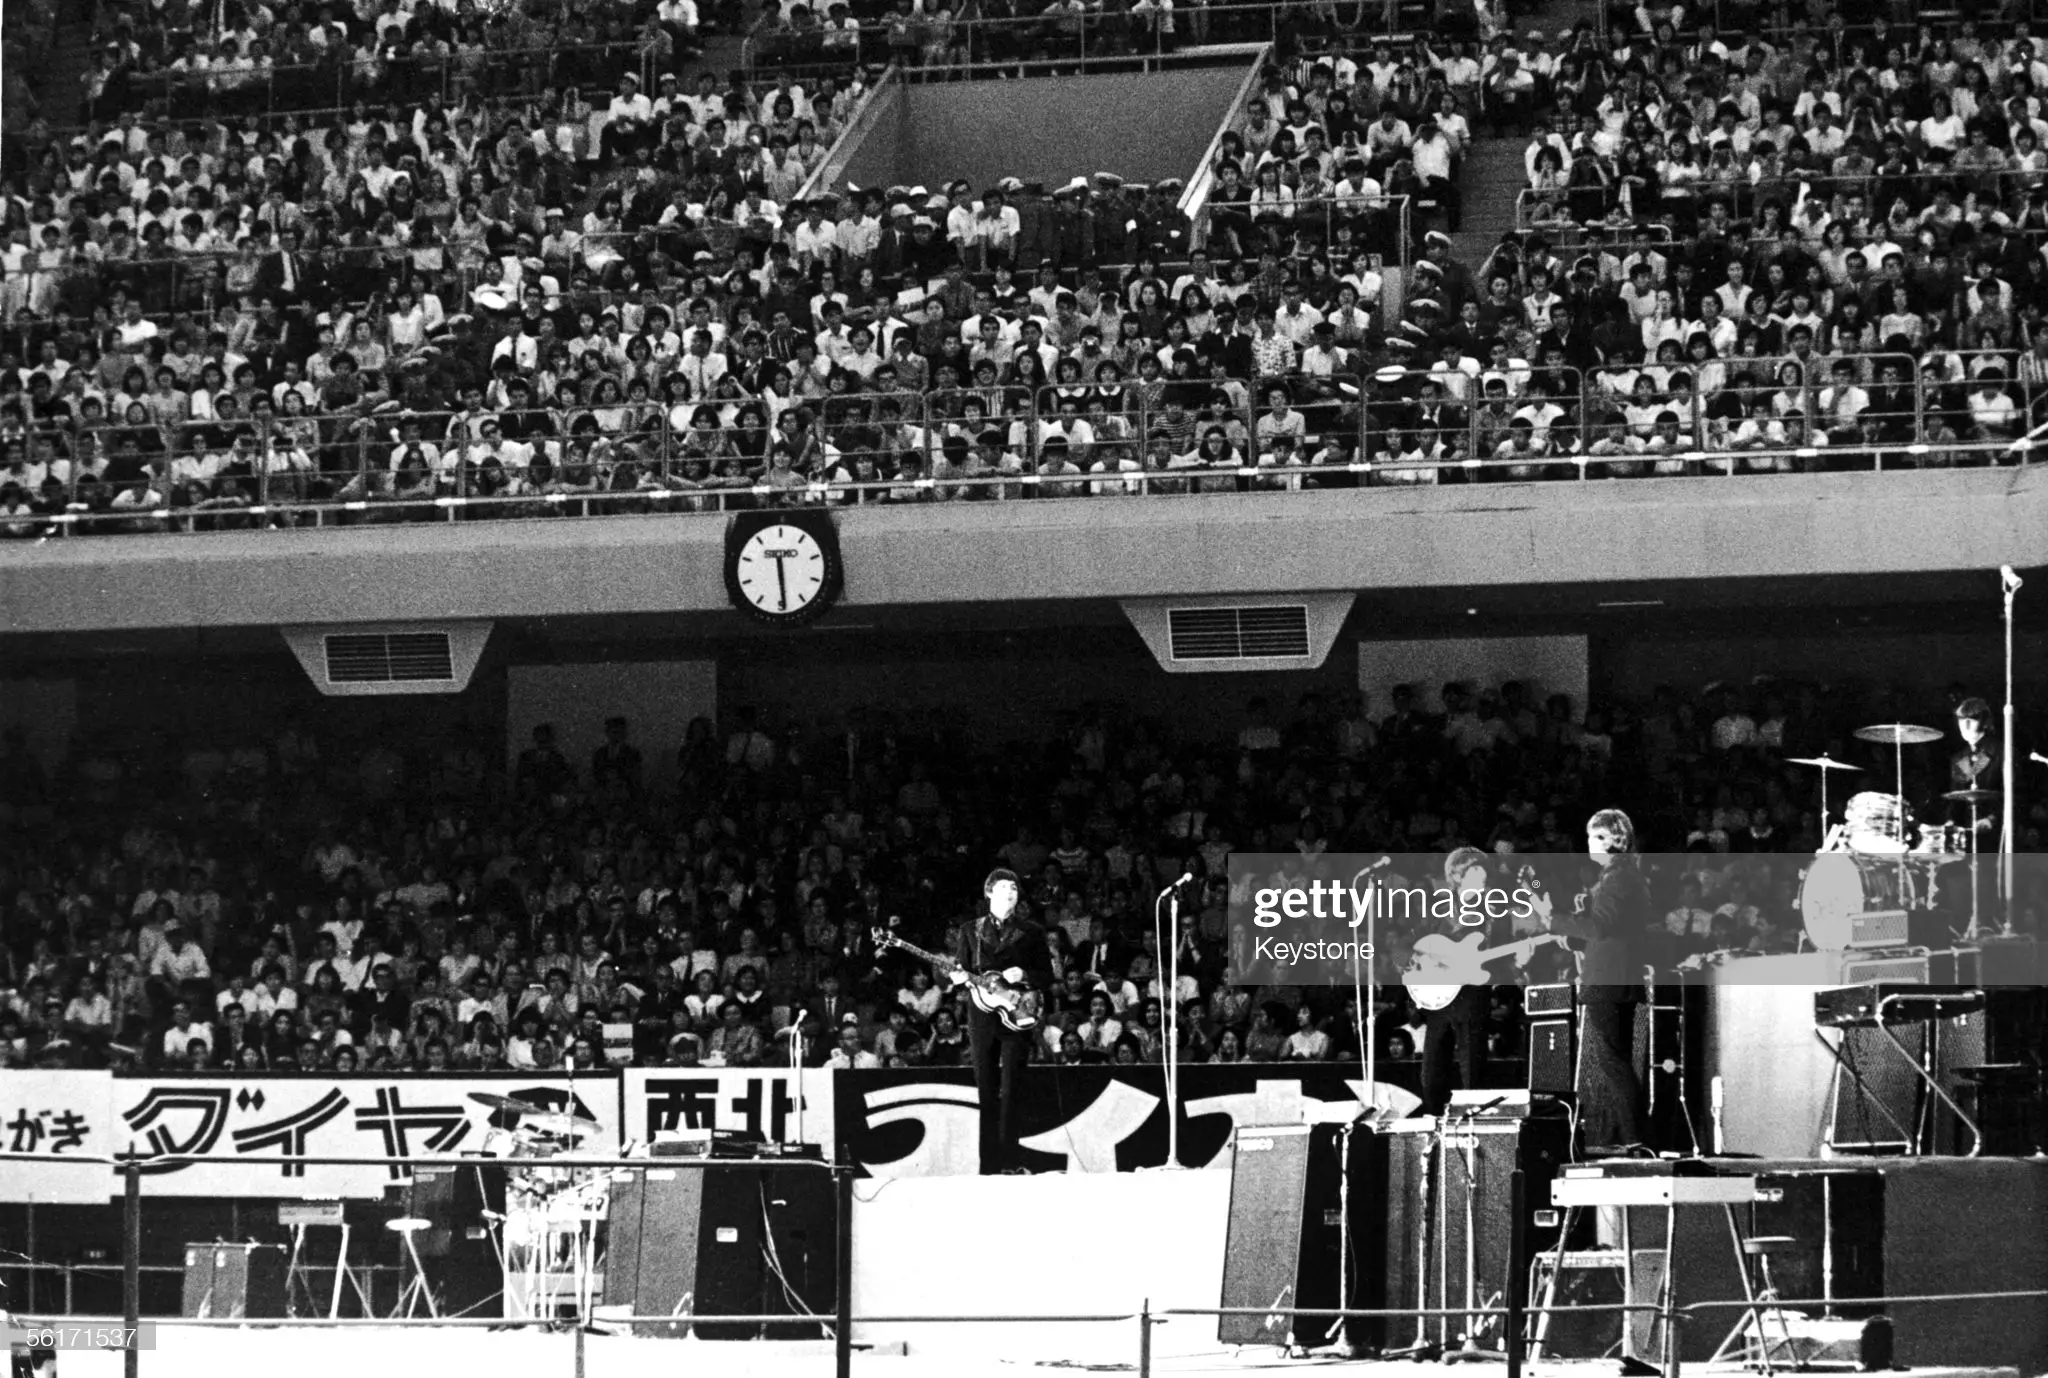 The Beatles concert at Nippon Budokan in Tokyo on Jun 30, 1966 